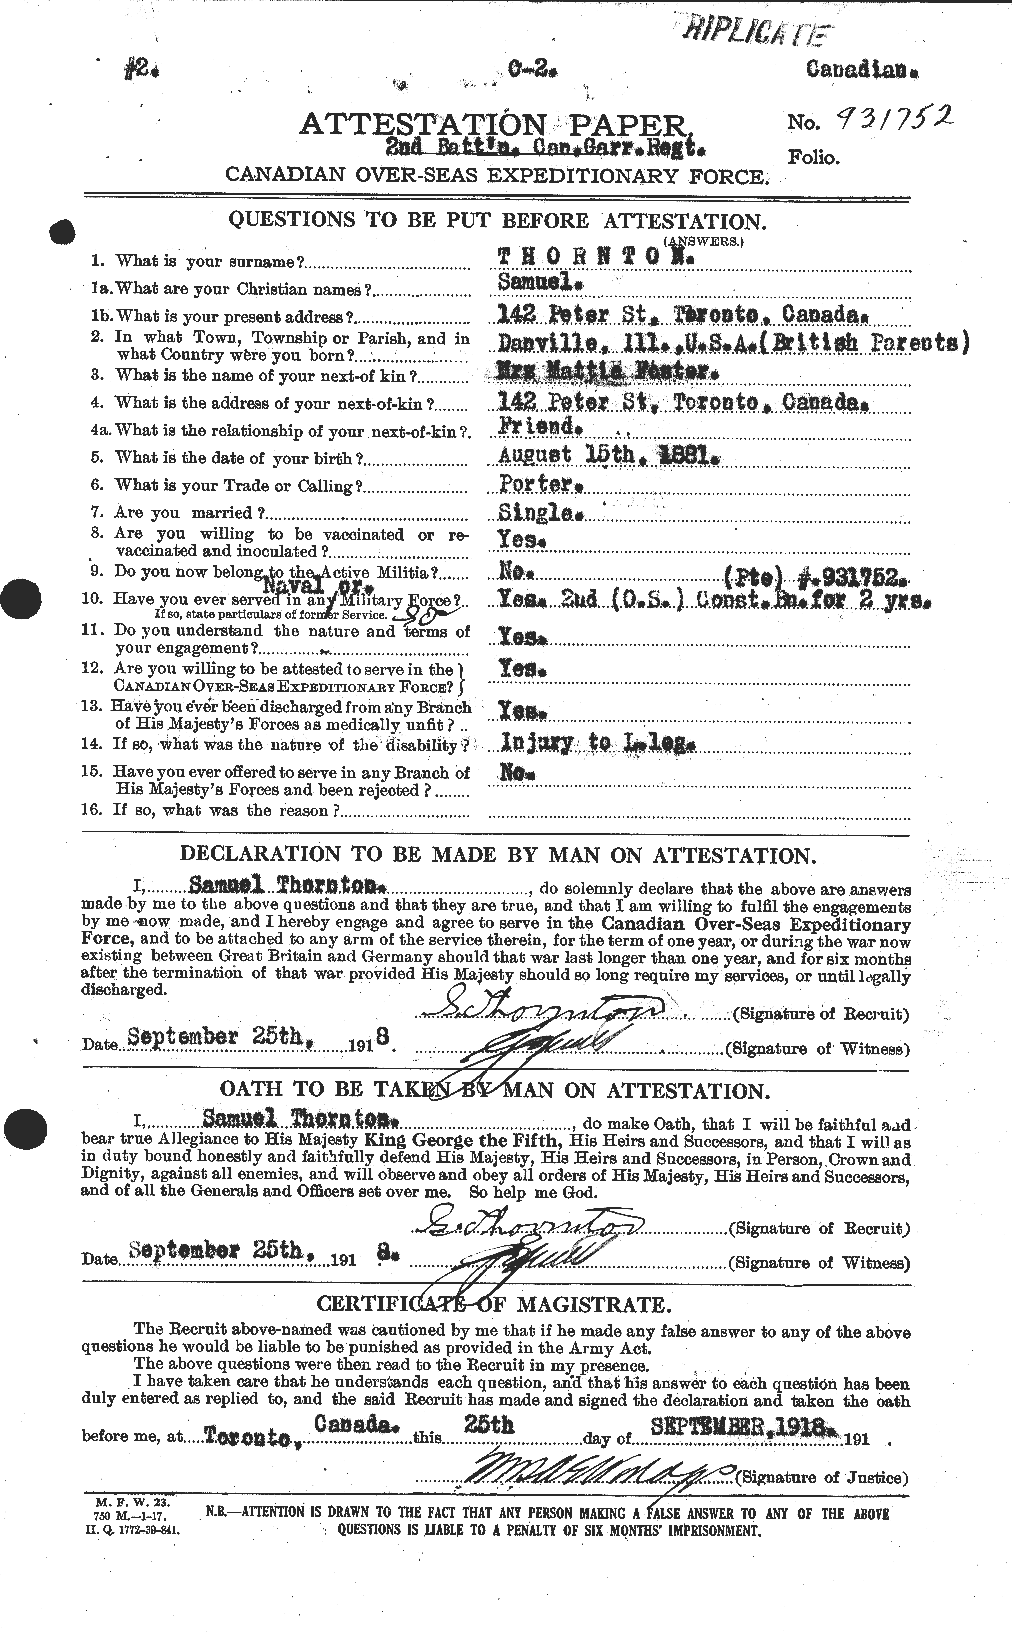 Dossiers du Personnel de la Première Guerre mondiale - CEC 636885a